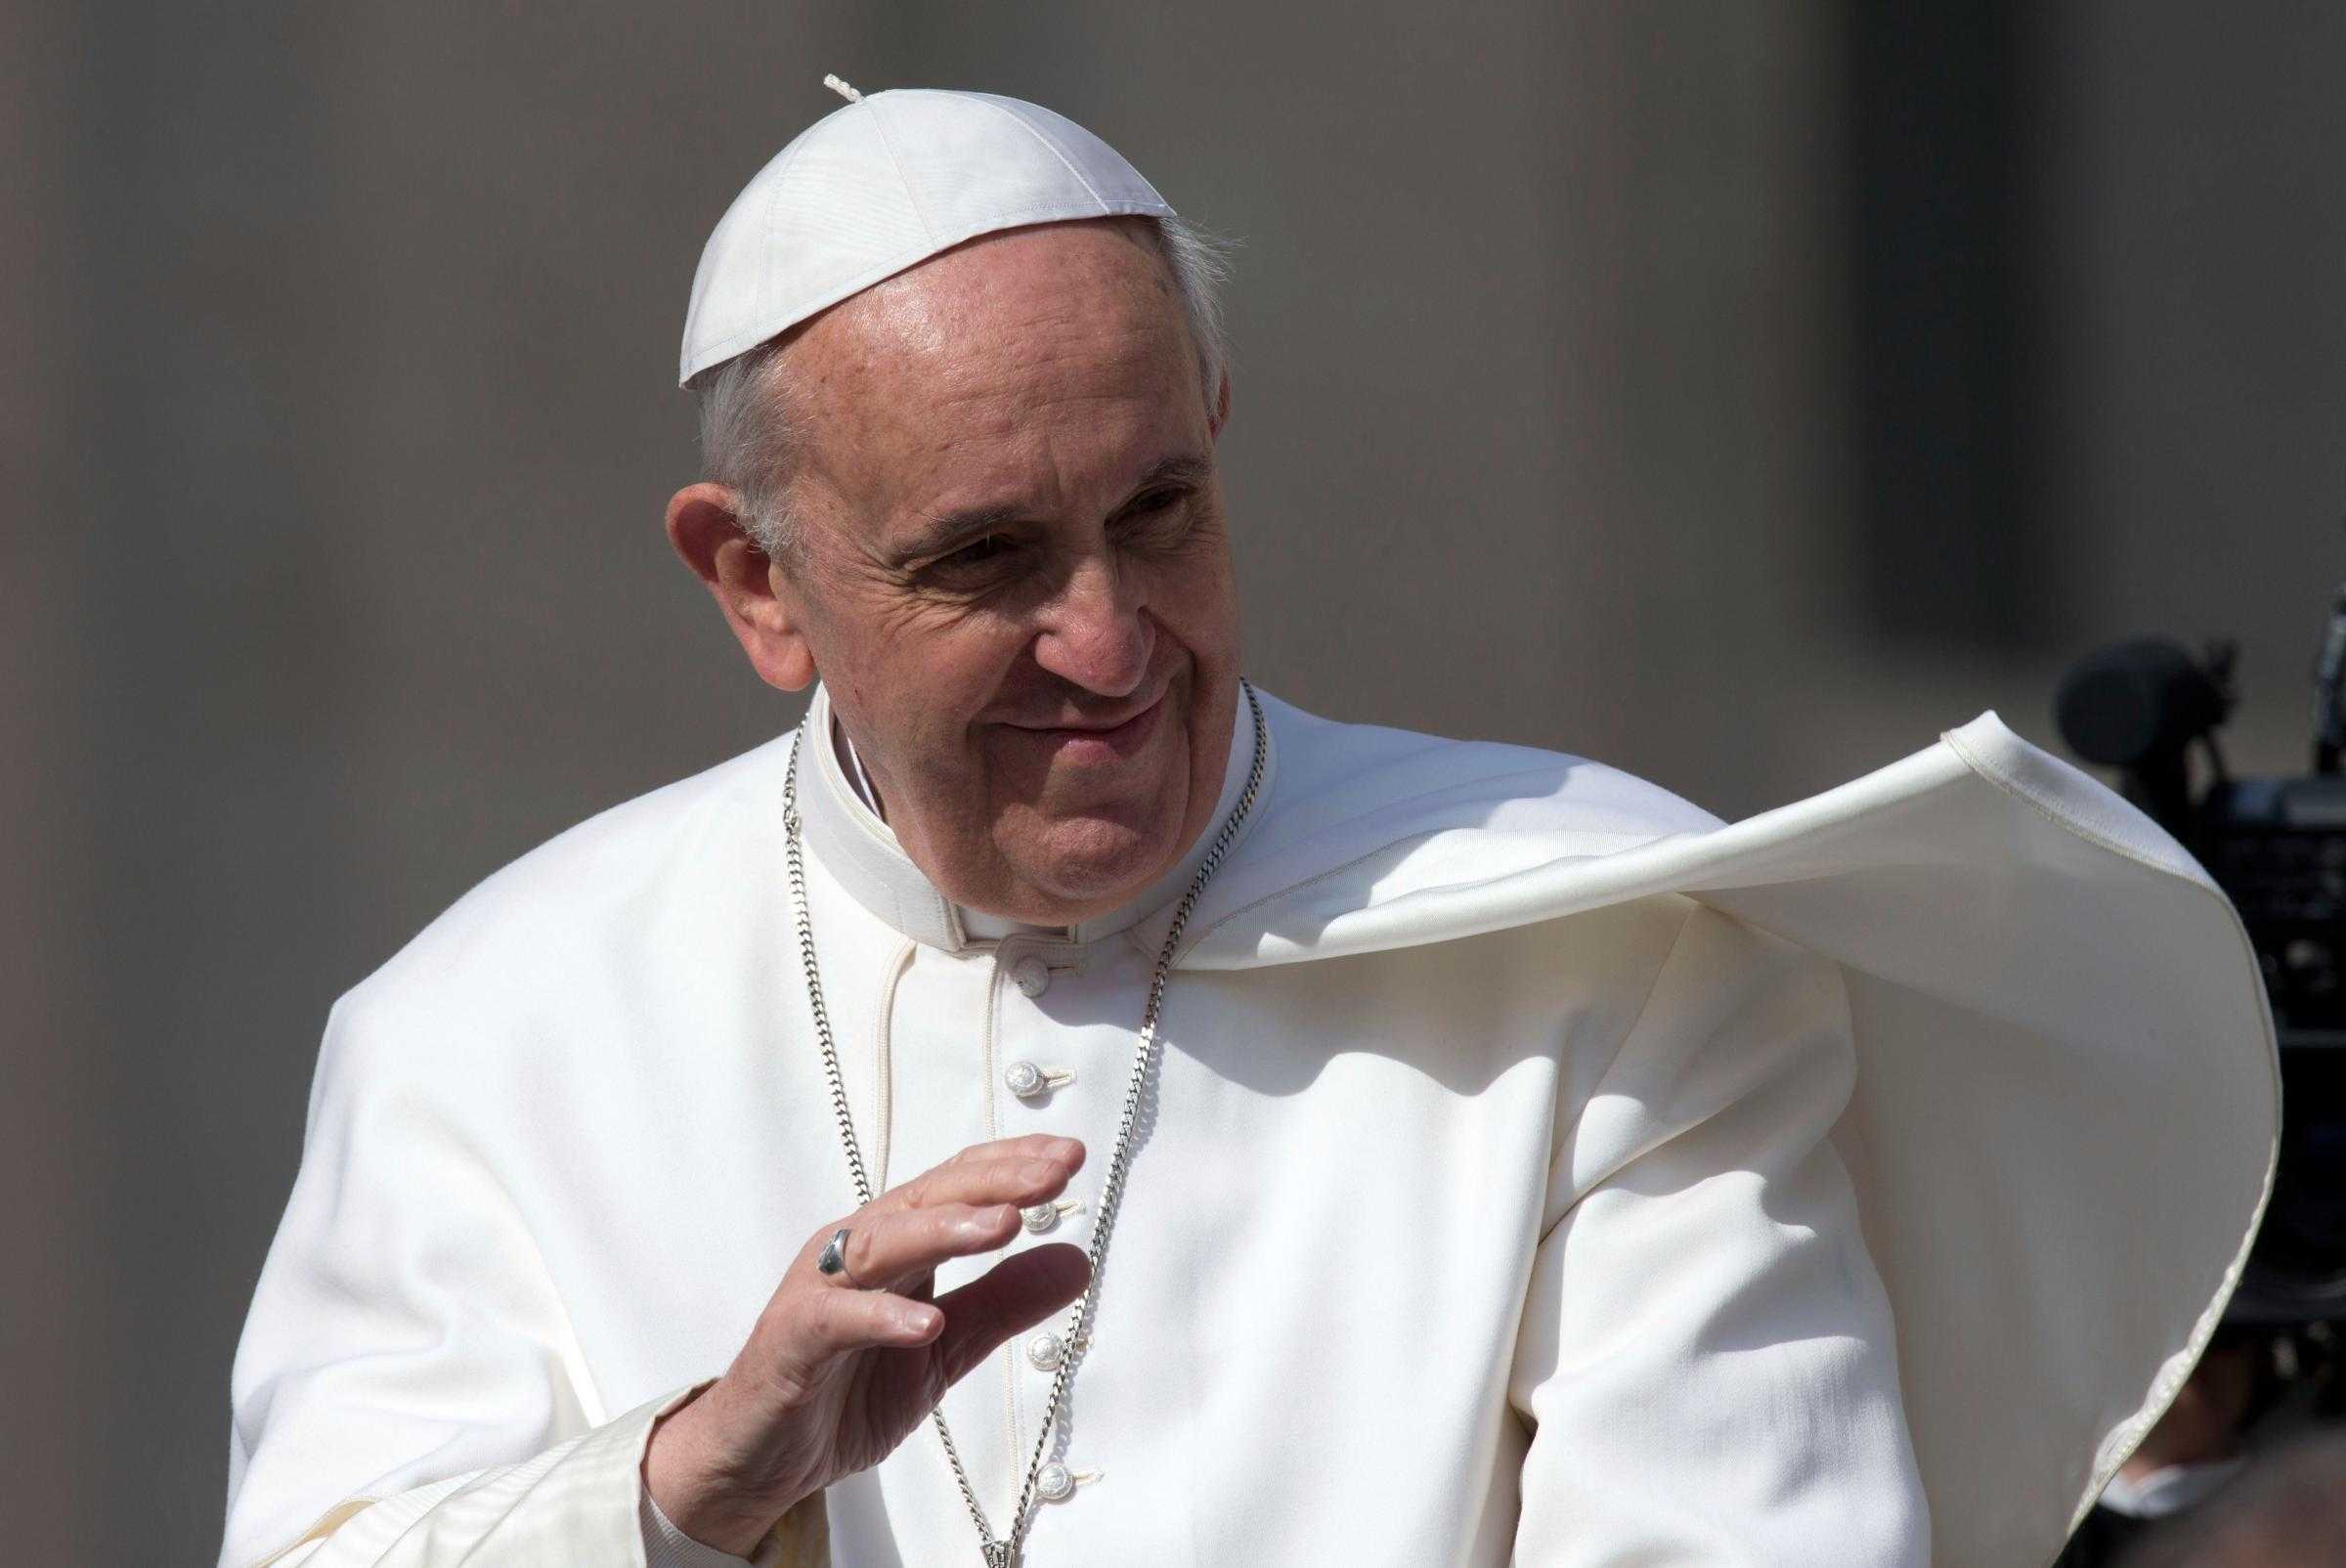 Vaticano: in vista del Sinodo sulla famiglia 38 domande ai fedeli sul divorzio, unioni gay e sesso